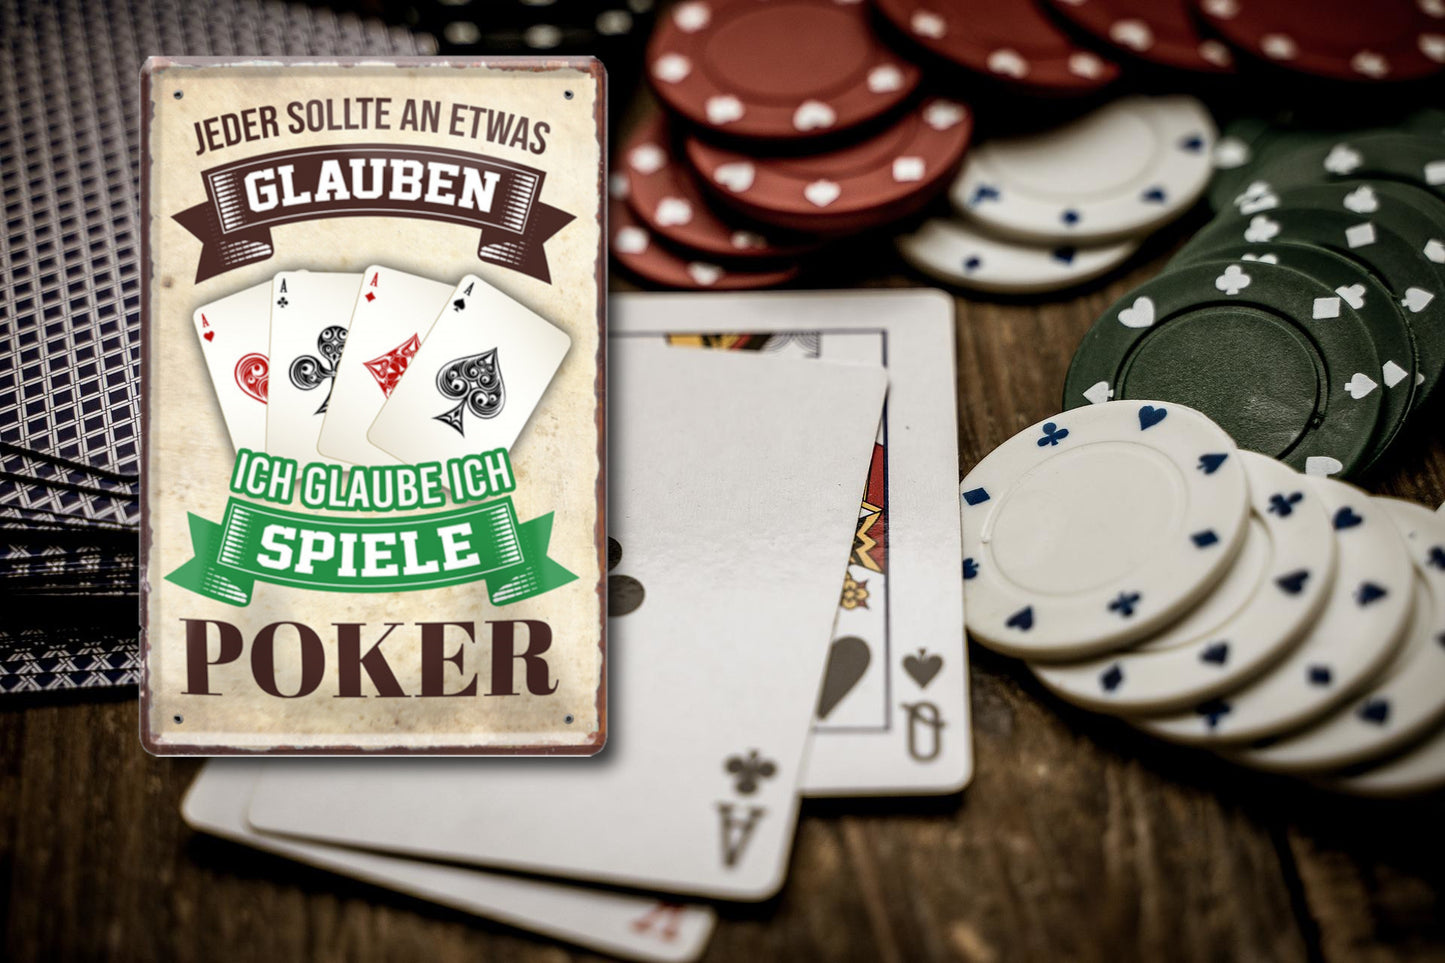 Blechschild ''Jeder sollte glauben Poker'' 20x30cm